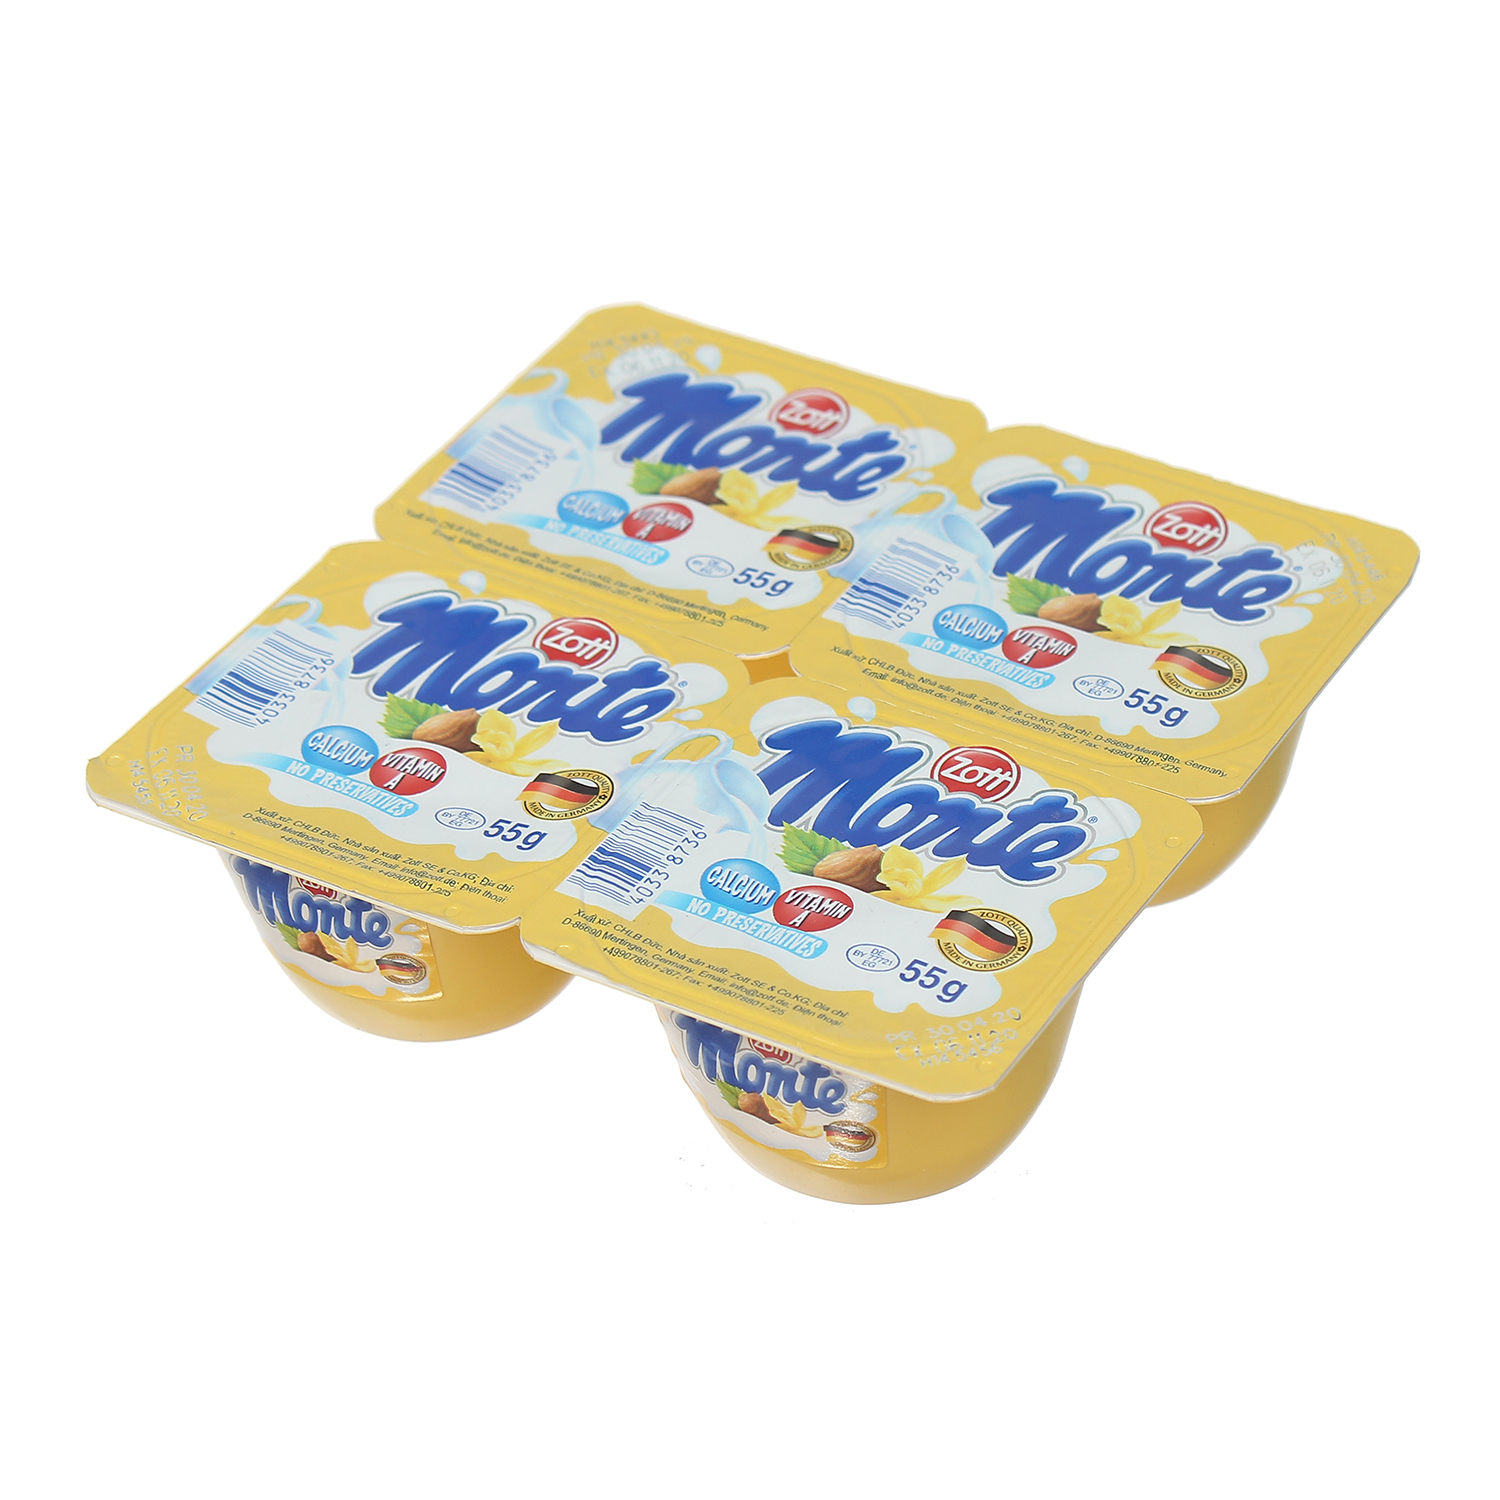 Váng sữa Monte Zott- Vanilla 4x55g cho bé trên 6 tháng tuổi